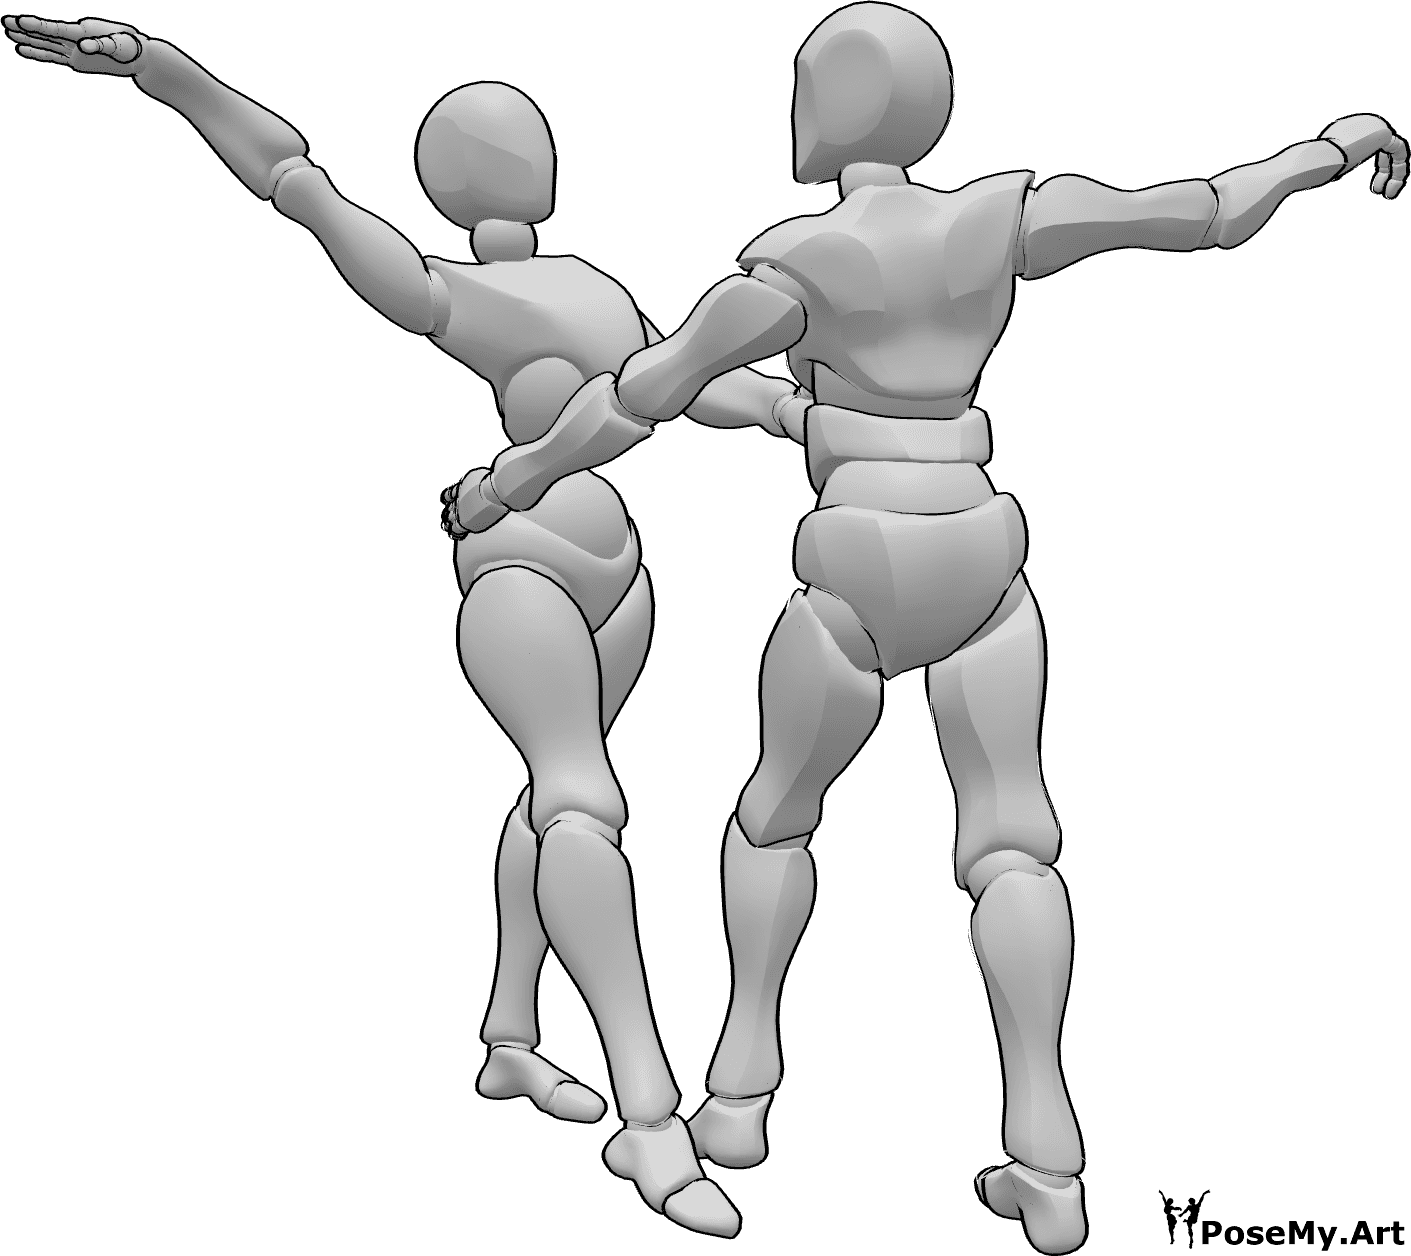 Referencia de poses- Dúo de bailarines posan - Mujer y hombre bailando juntos posan